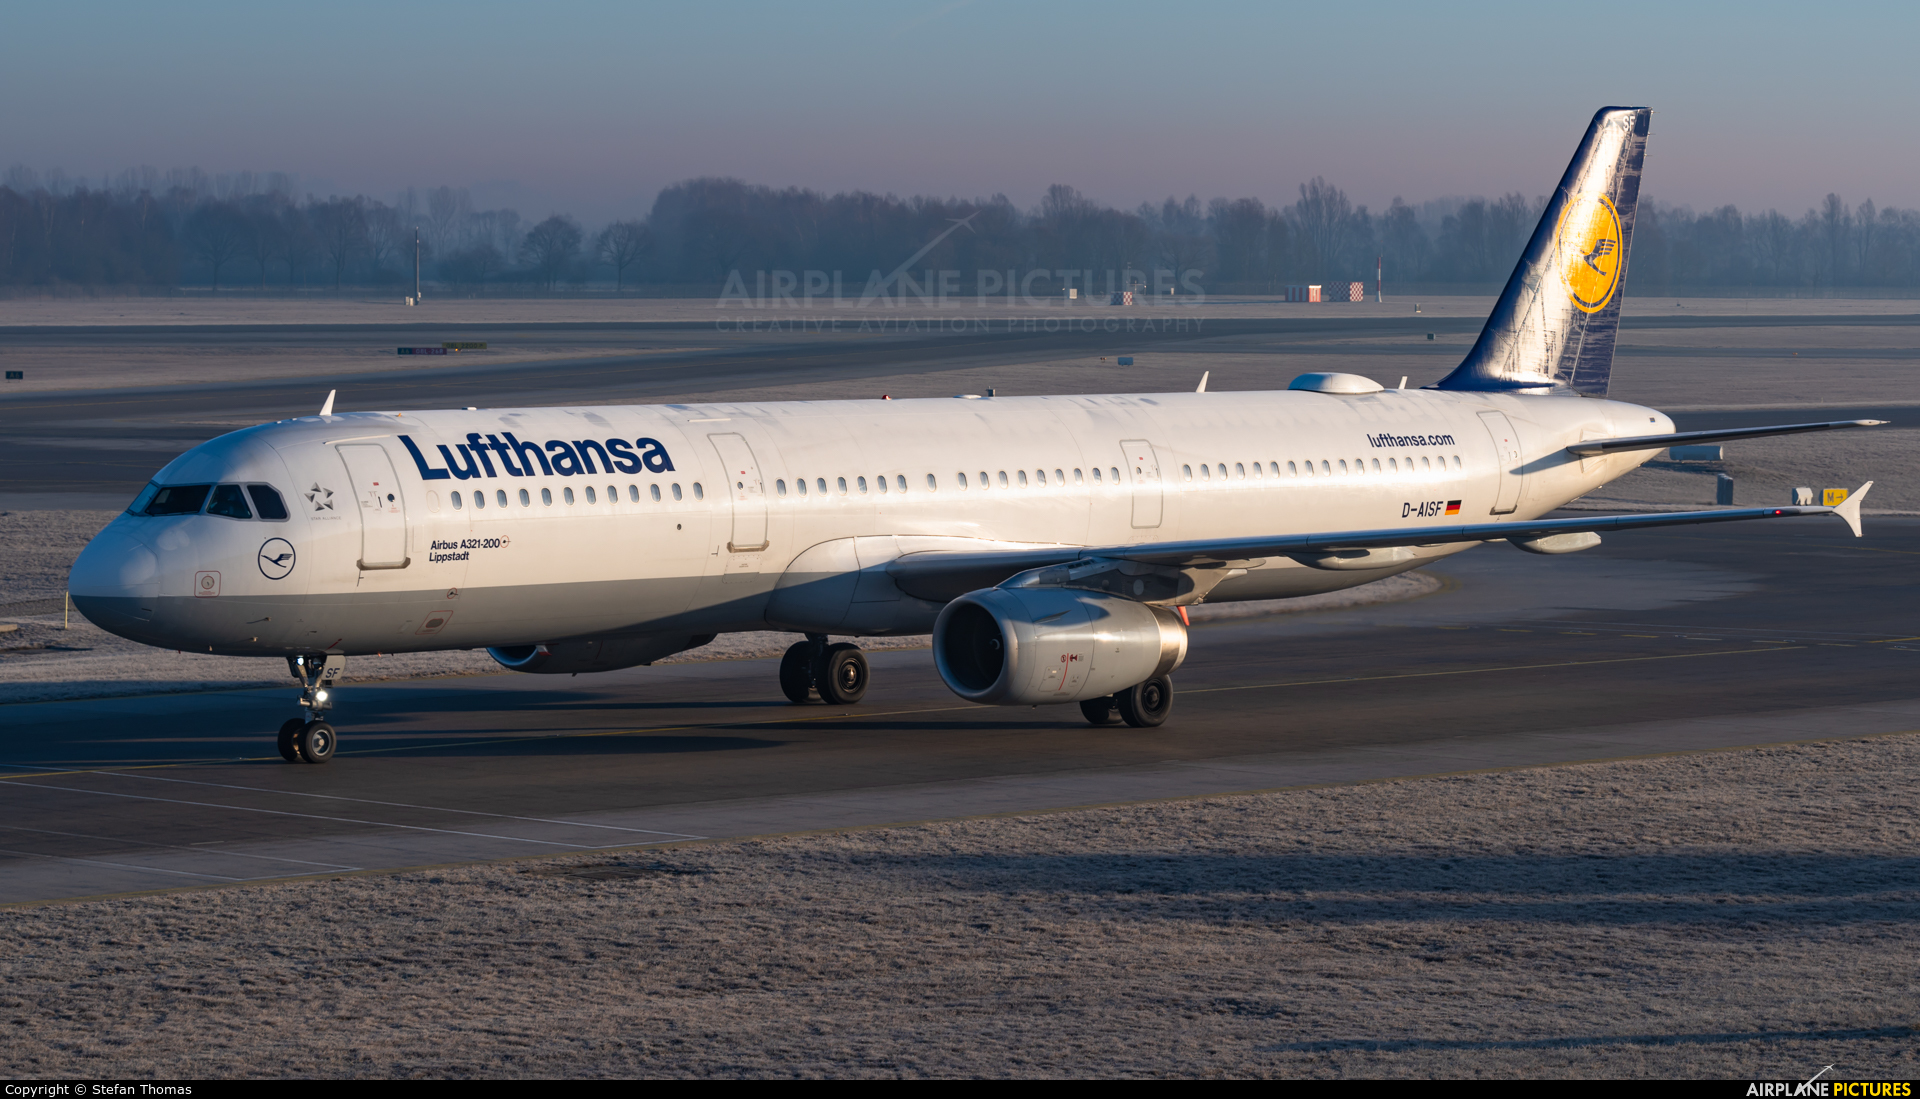 Lufthansa D-AISF aircraft at Munich